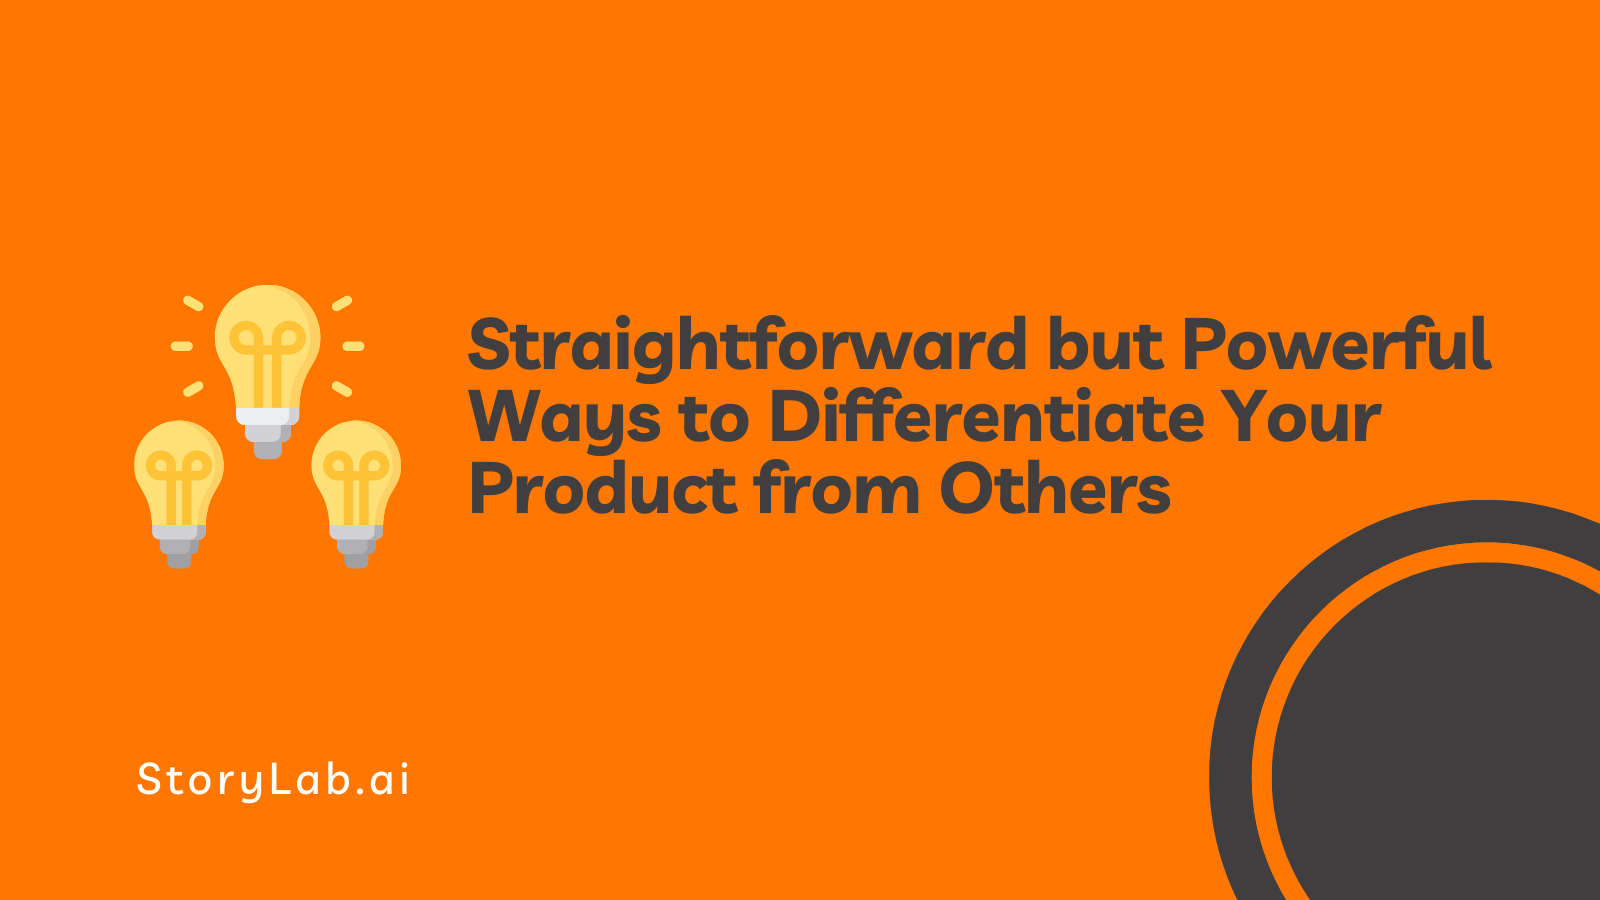 Des moyens simples mais puissants de différencier votre produit des autres